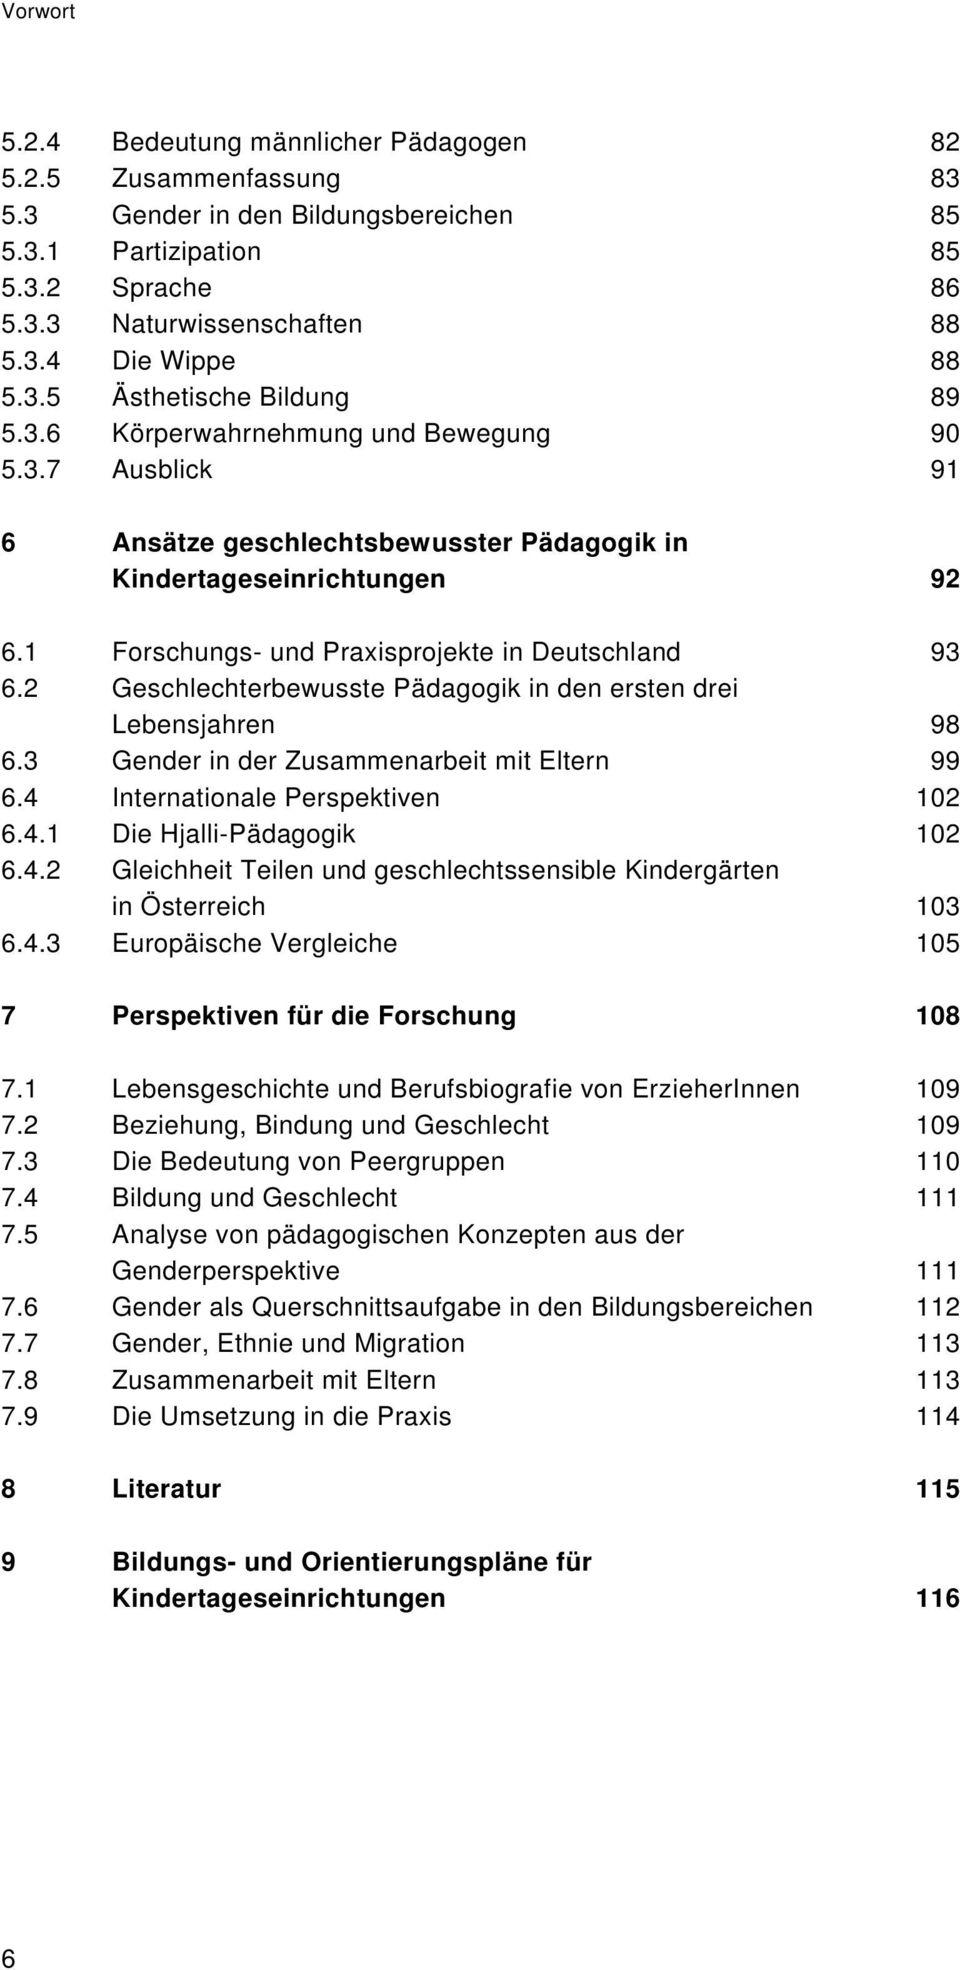 1 Forschungs- und Praxisprojekte in Deutschland 93 6.2 Geschlechterbewusste Pädagogik in den ersten drei Lebensjahren 98 6.3 Gender in der Zusammenarbeit mit Eltern 99 6.